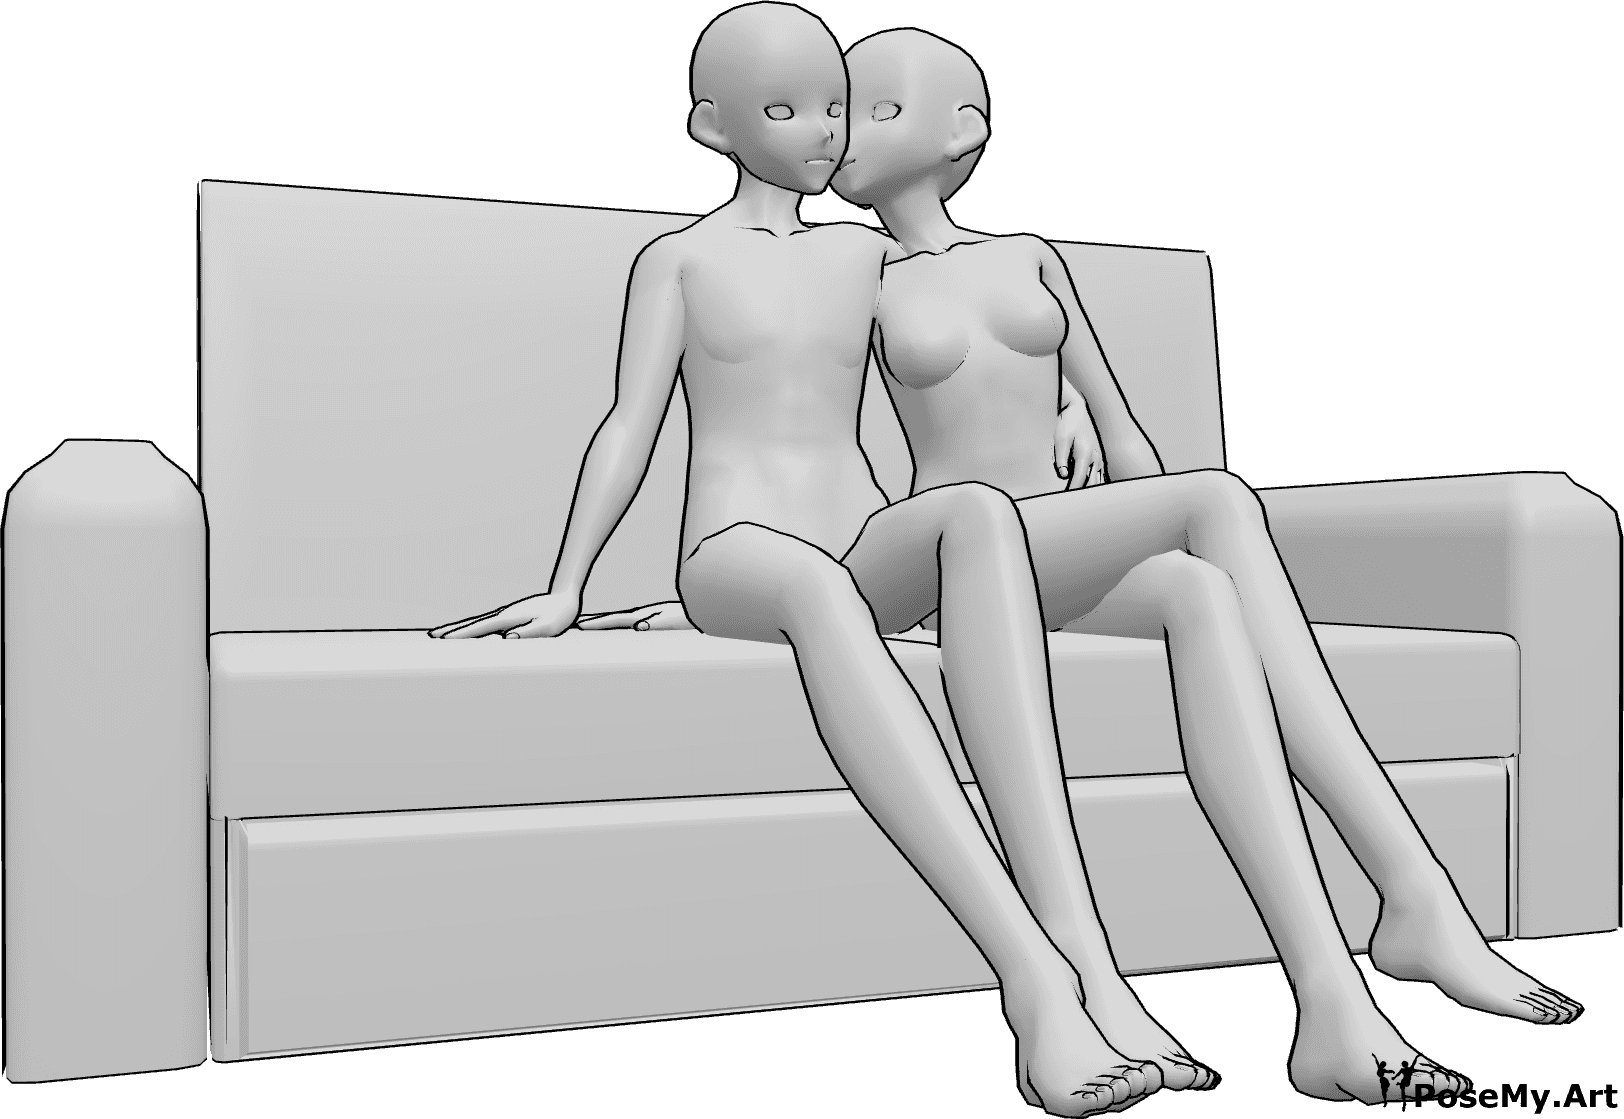 Referência de poses- Pose do beijo na face sentada - Anime feminino e masculino estão sentados no sofá, a mulher está a dar um beijo na bochecha